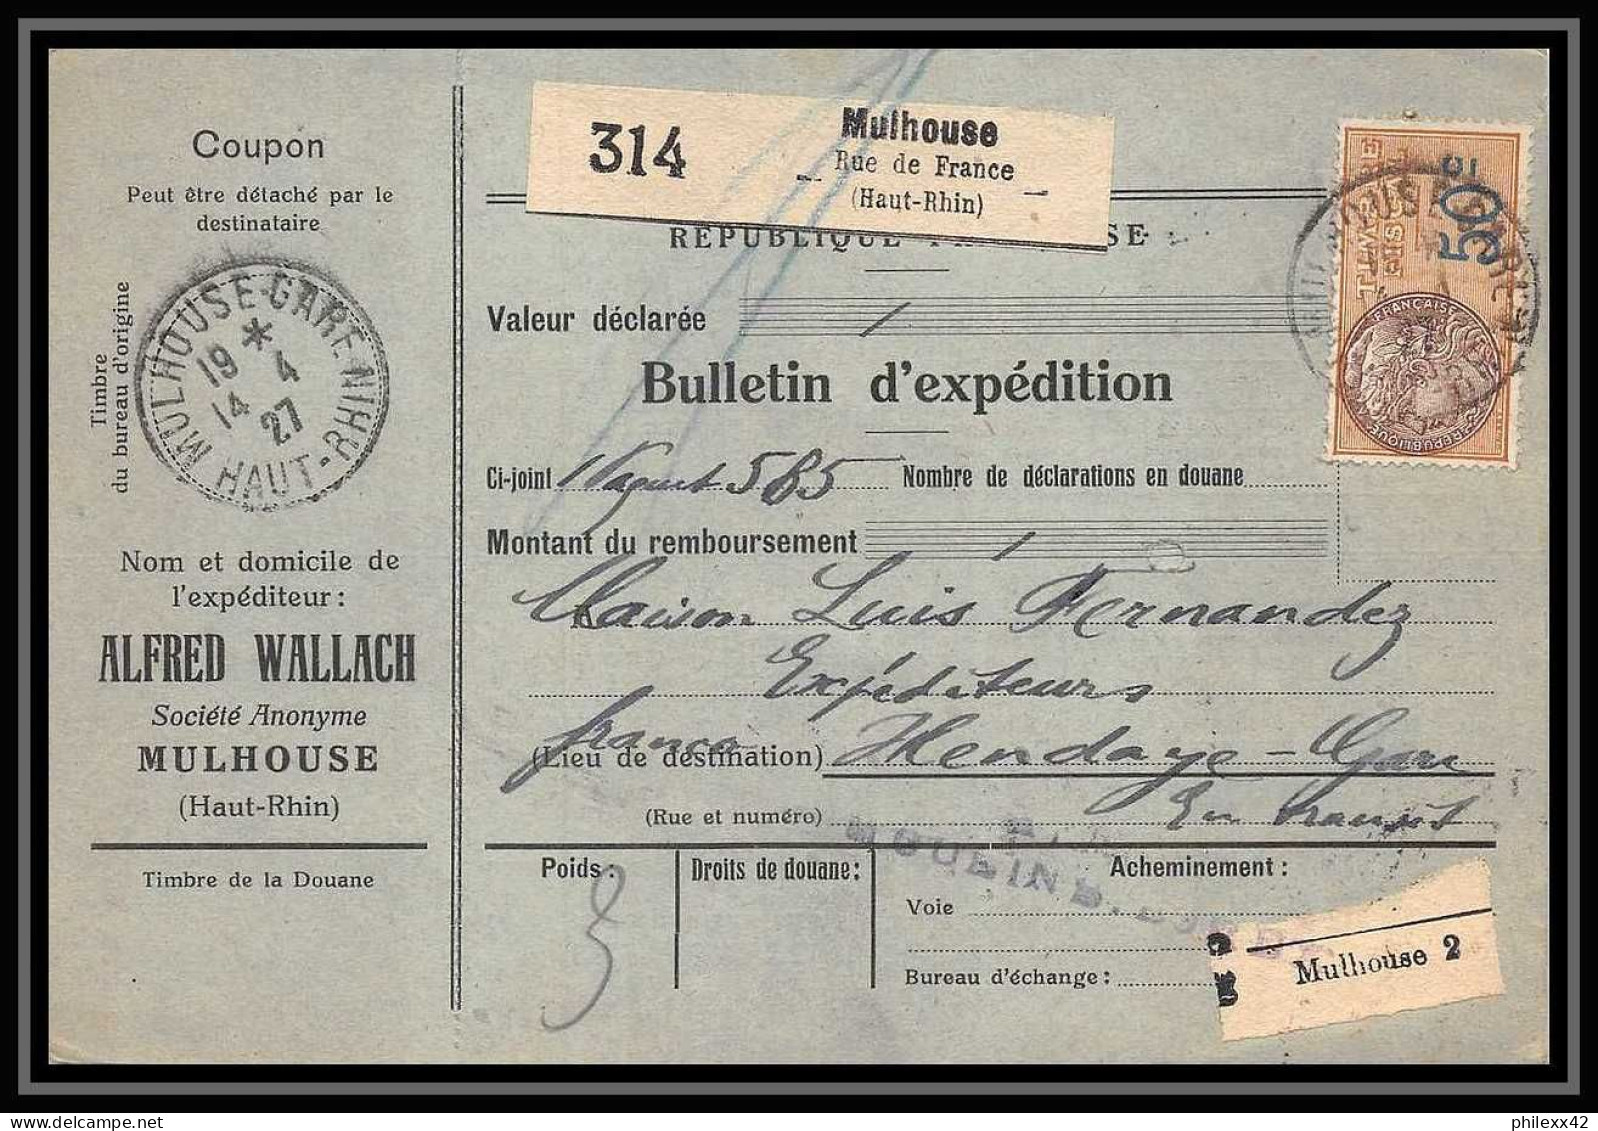 25056 Bulletin D'expédition France Colis Postaux Fiscal Haut Rhin - 1927 Mulhouse Merson 206 Alsace-Lorraine  - Storia Postale